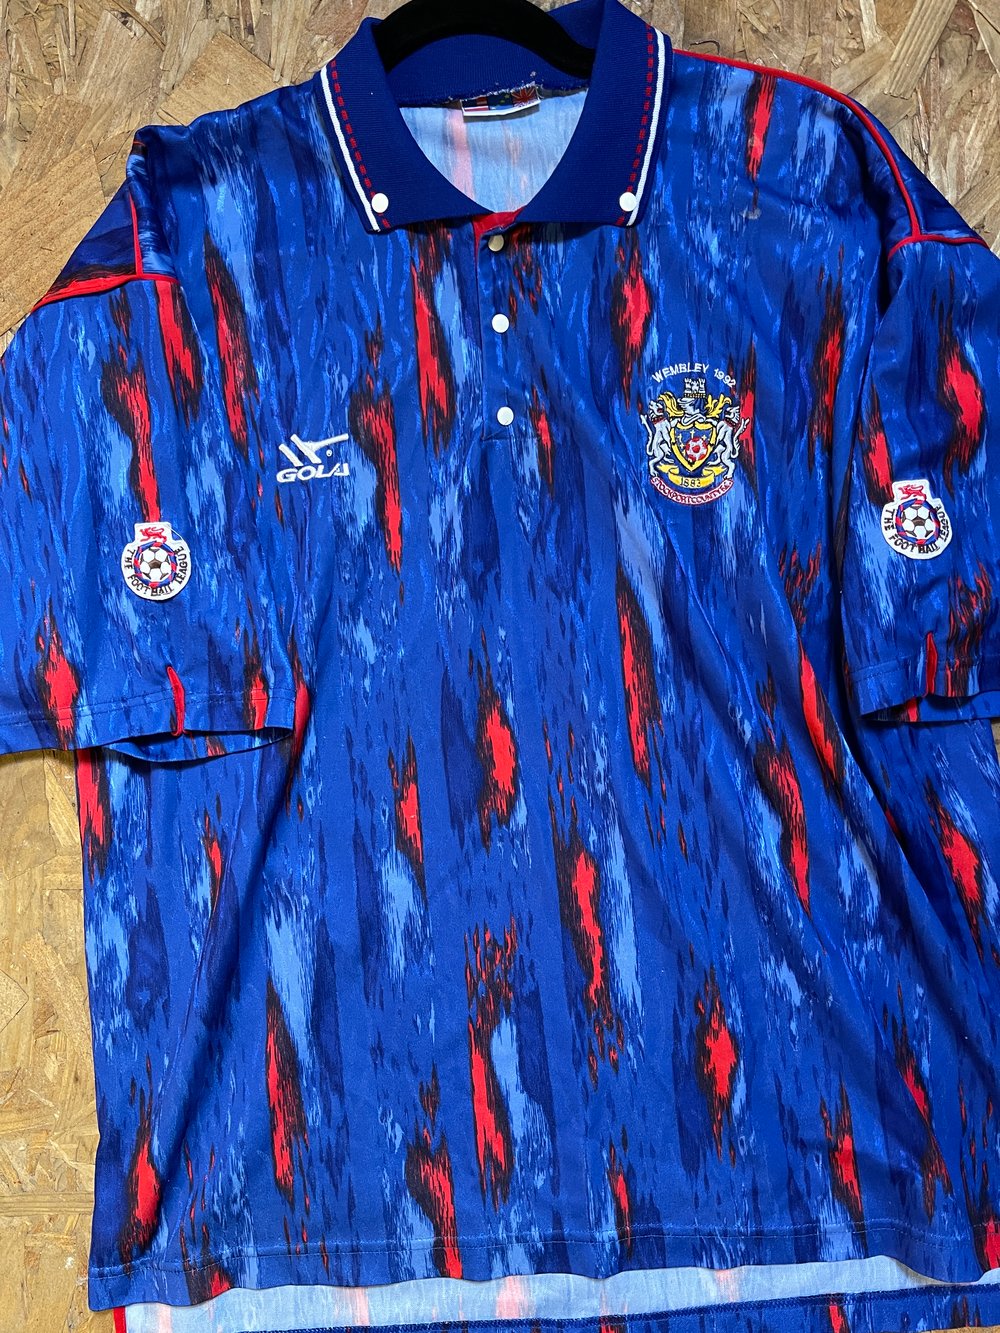 Match Worn 1991/92 Gola Wembley Home Shirt